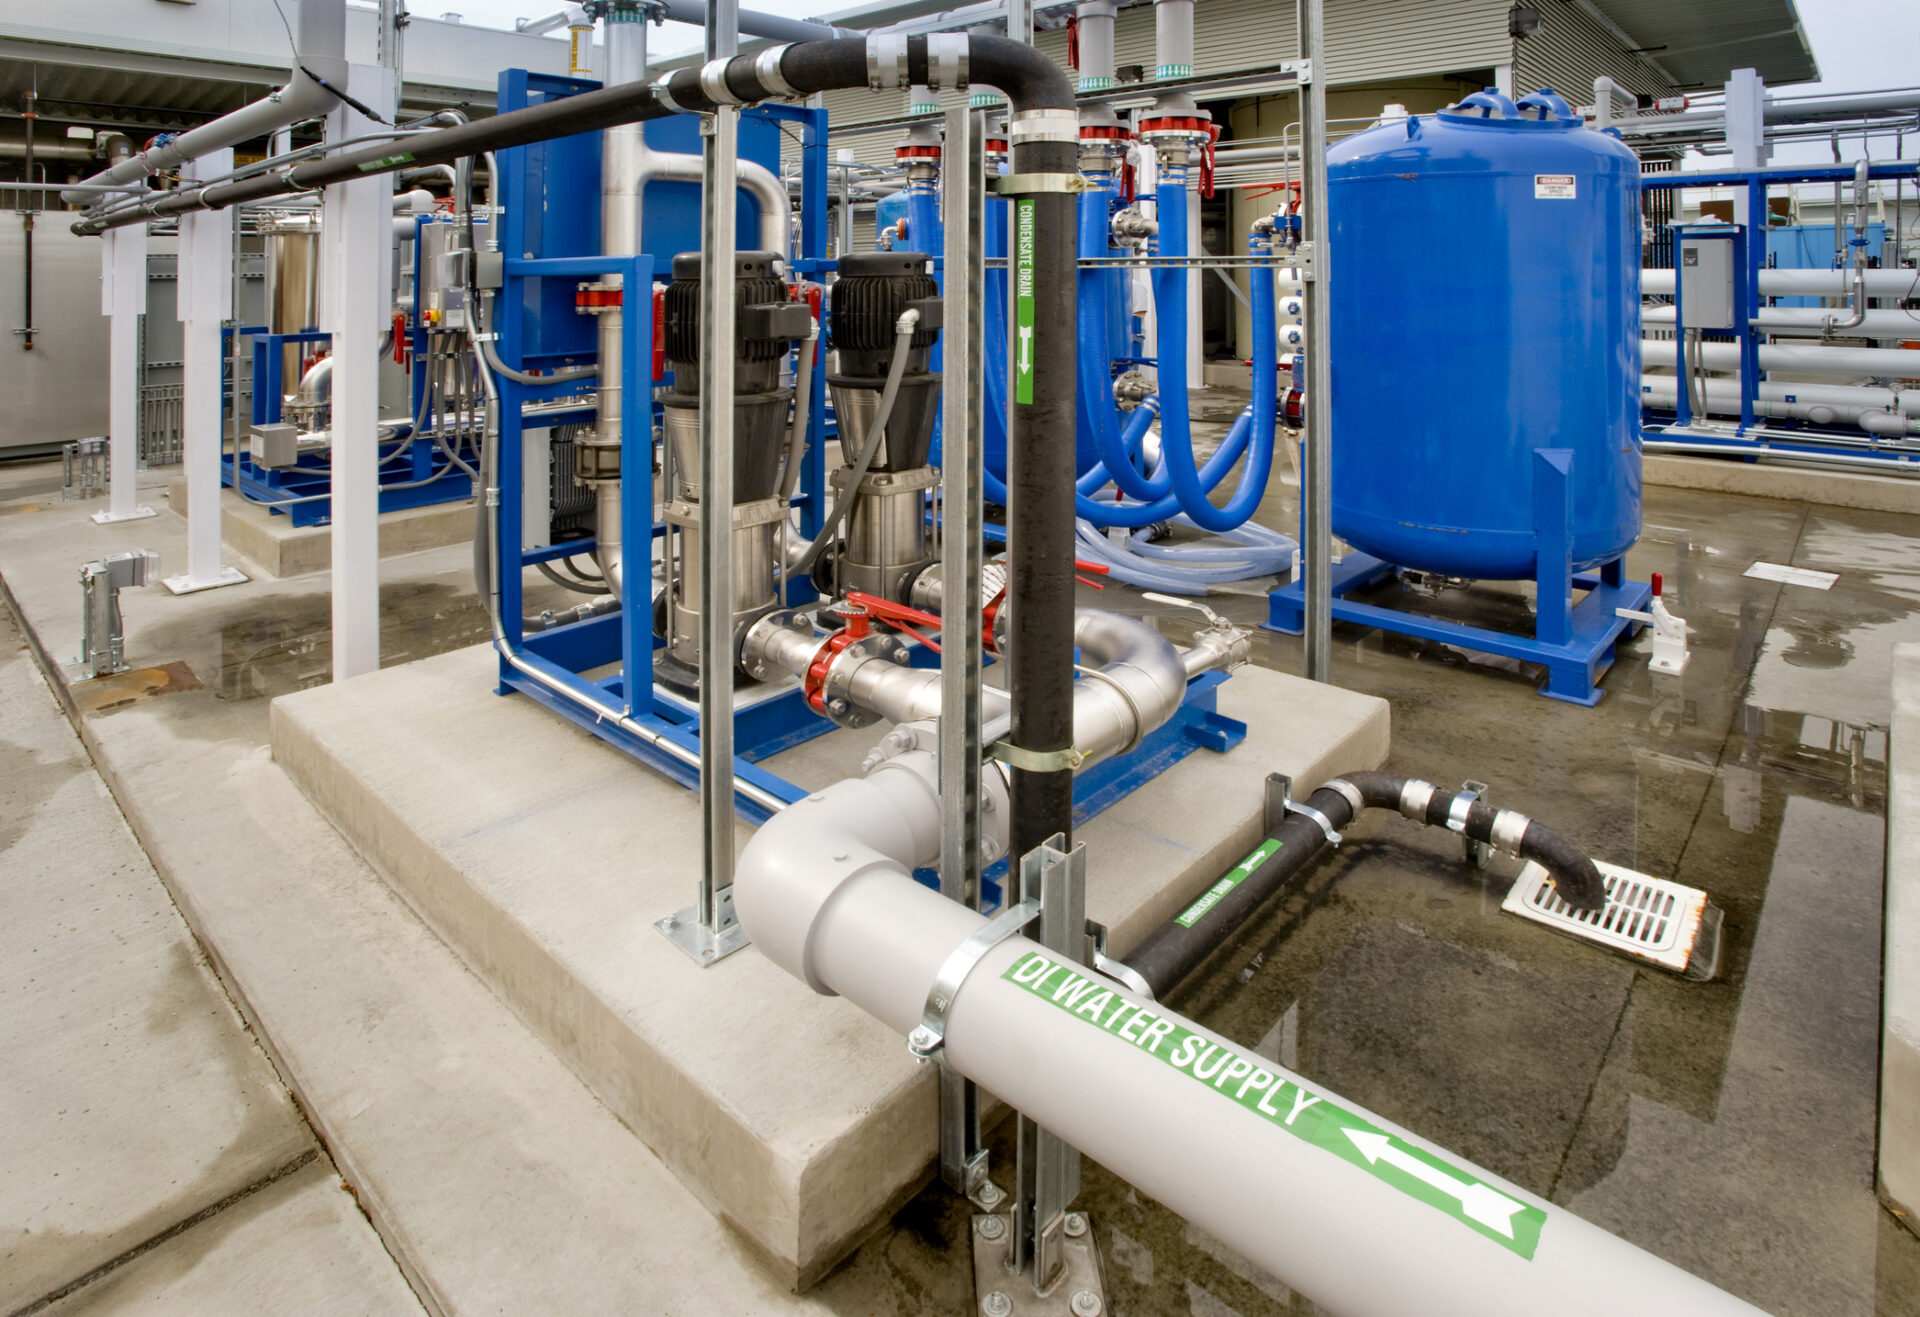 deionized water filtration